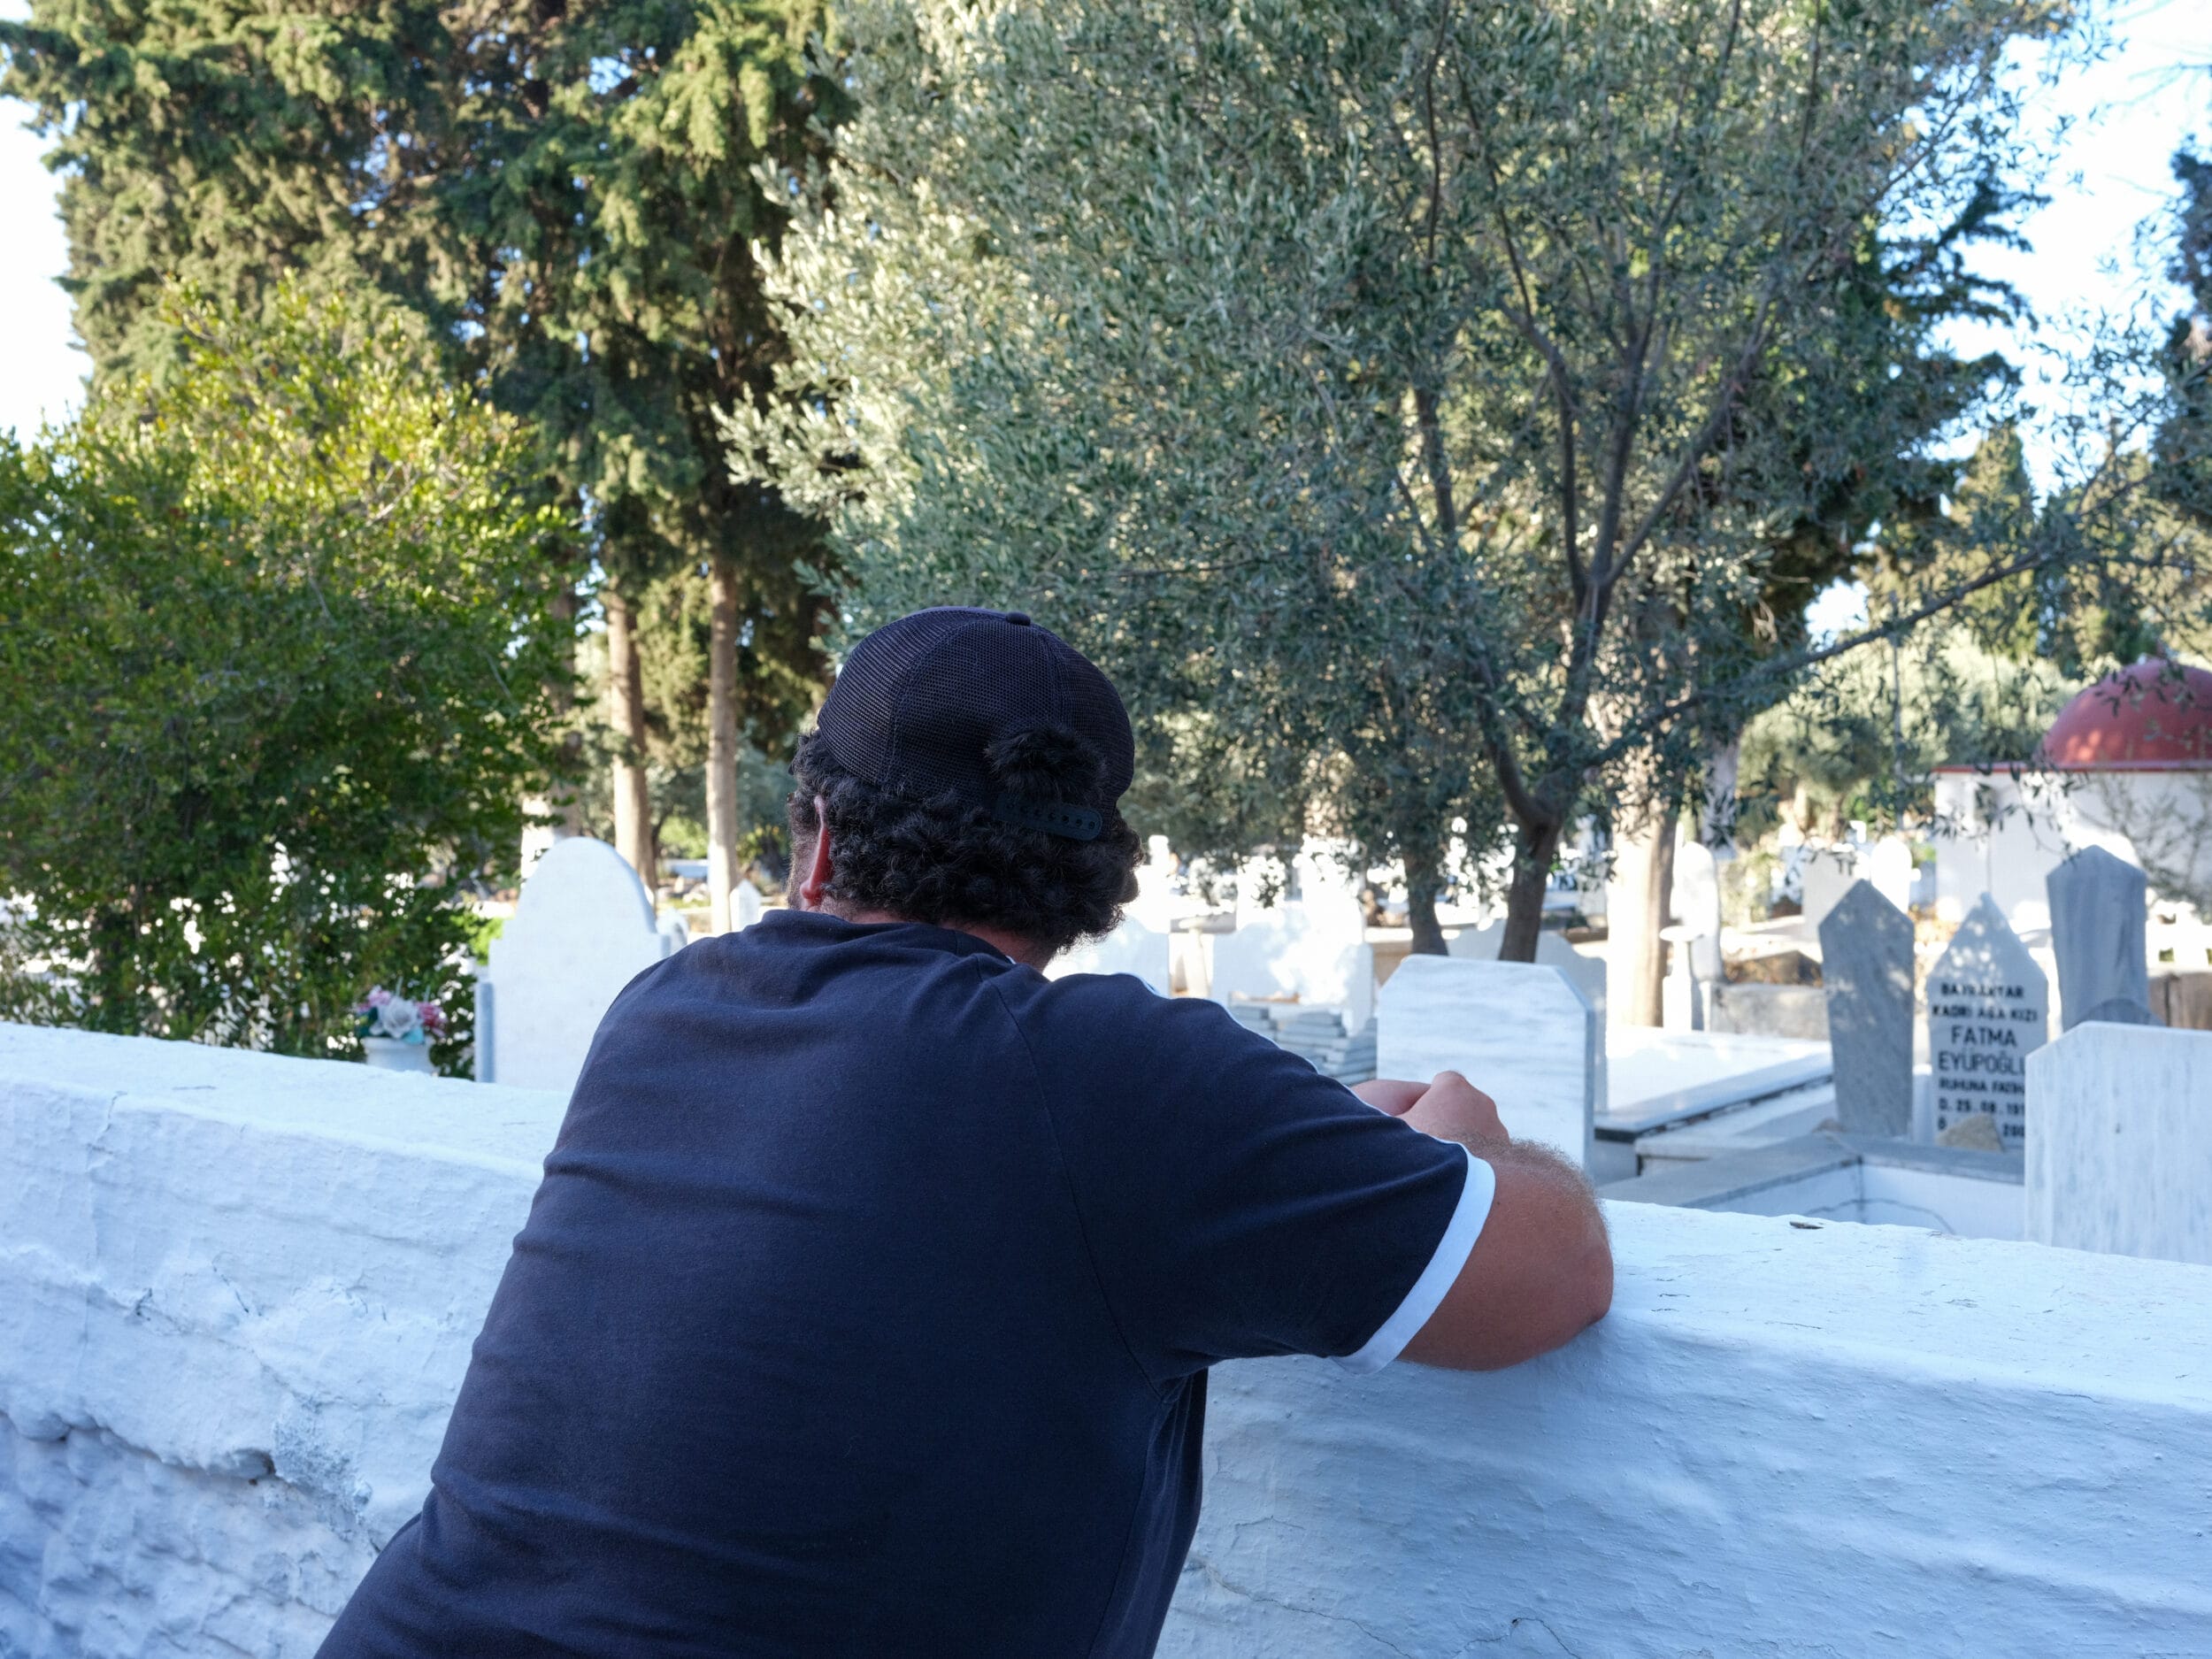 رجل ذو شعر أسود مجعد تم تصويره من الخلف ووجهه متجنب، متكئا على جدار أبيض تظهر خلفه شواهد القبور.